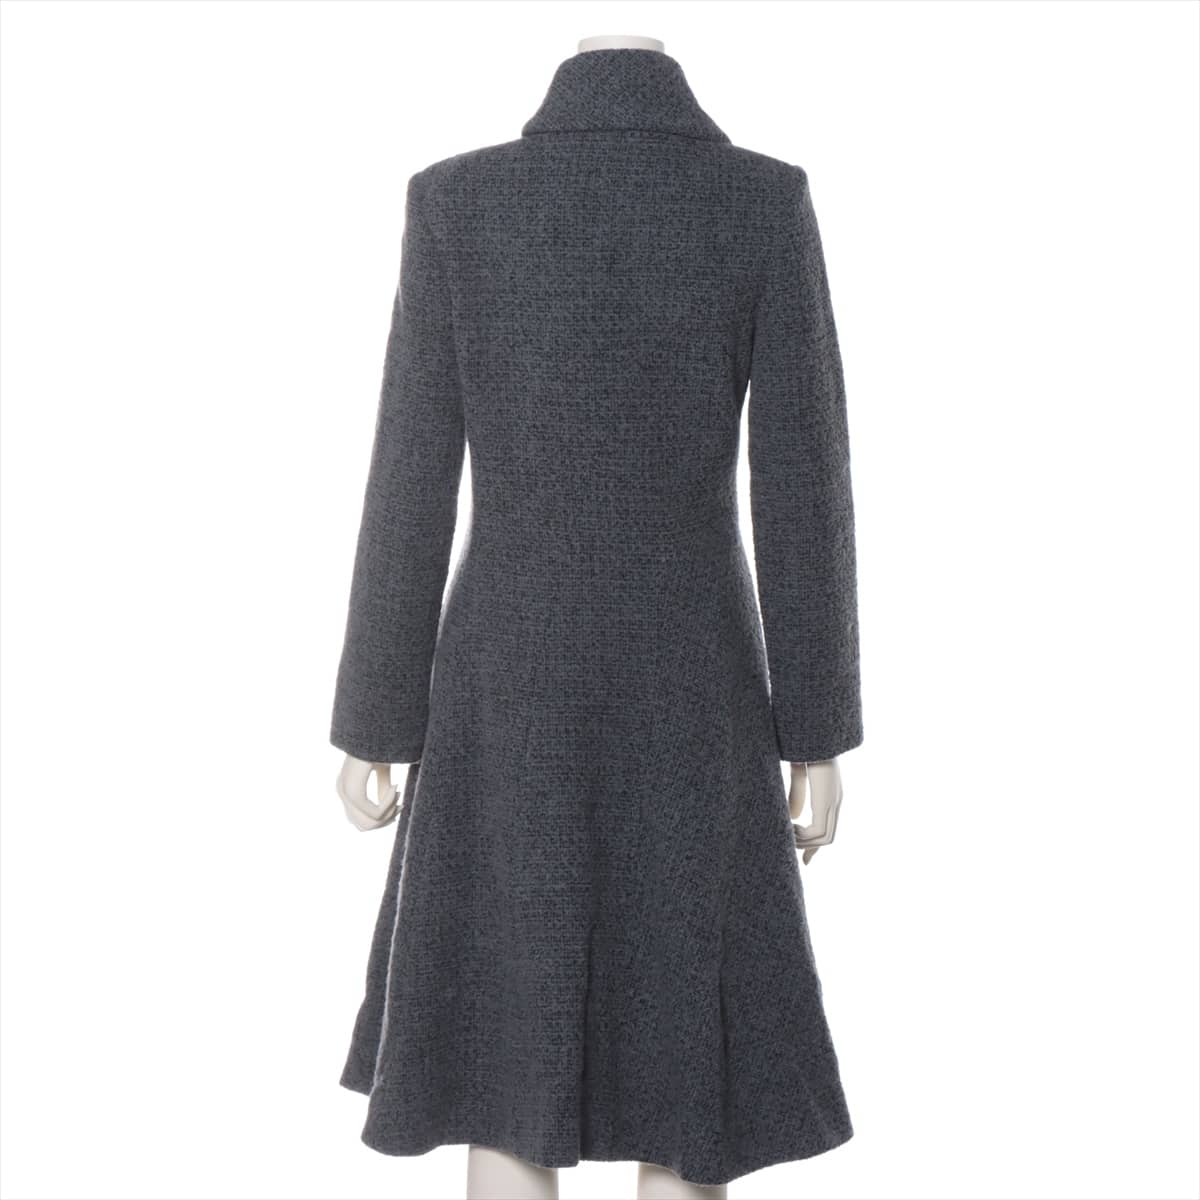 Vivienne Westwood RED LABEL Wool & nylon coats 1 Ladies' Grey  16-01-682012